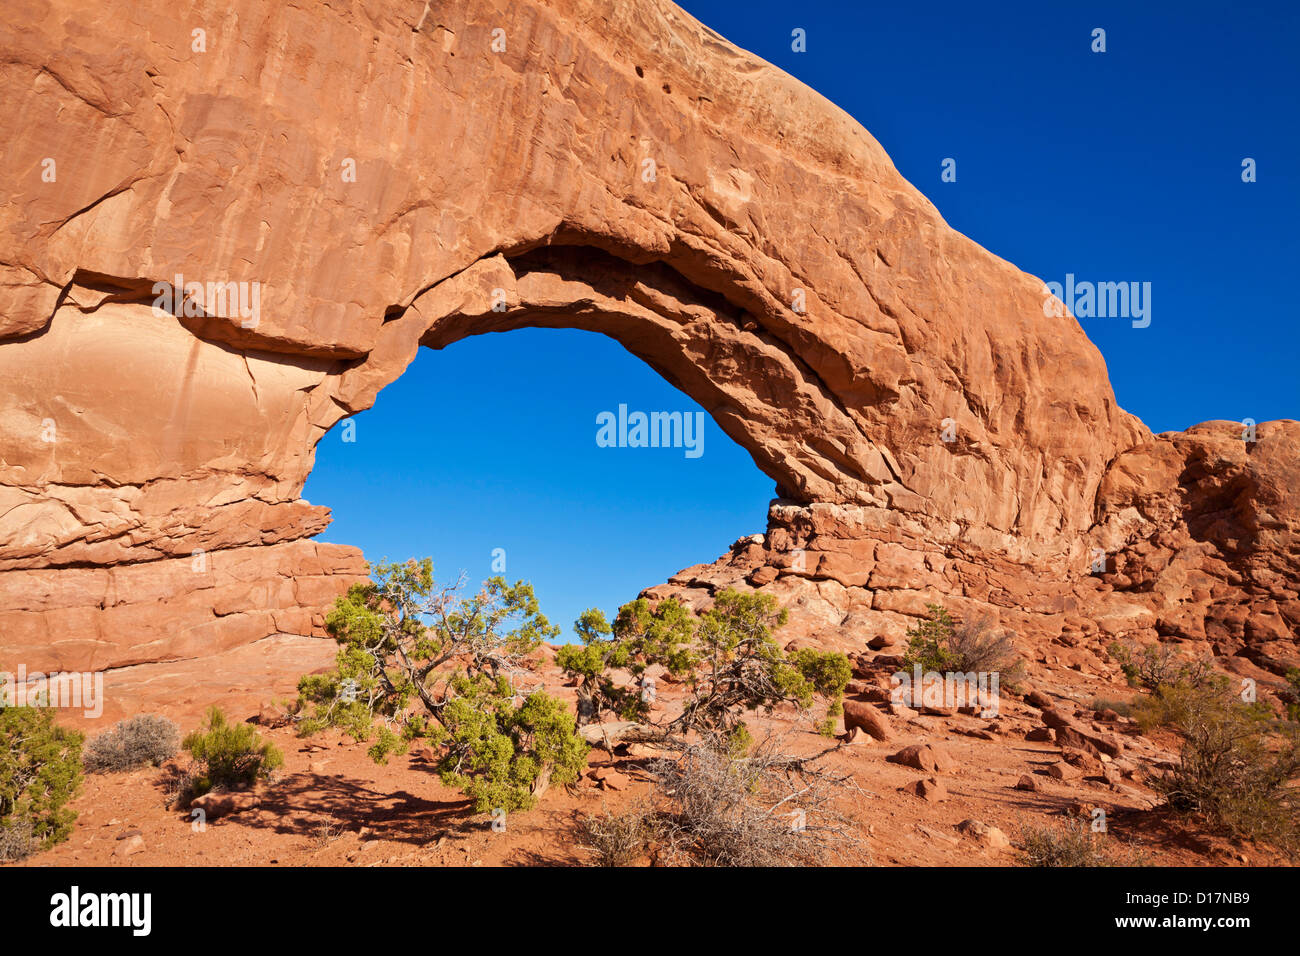 La fenêtre du Nord Arch Arches National Park près de Moab Utah USA Amérique du Nord États-Unis d'Amérique Banque D'Images